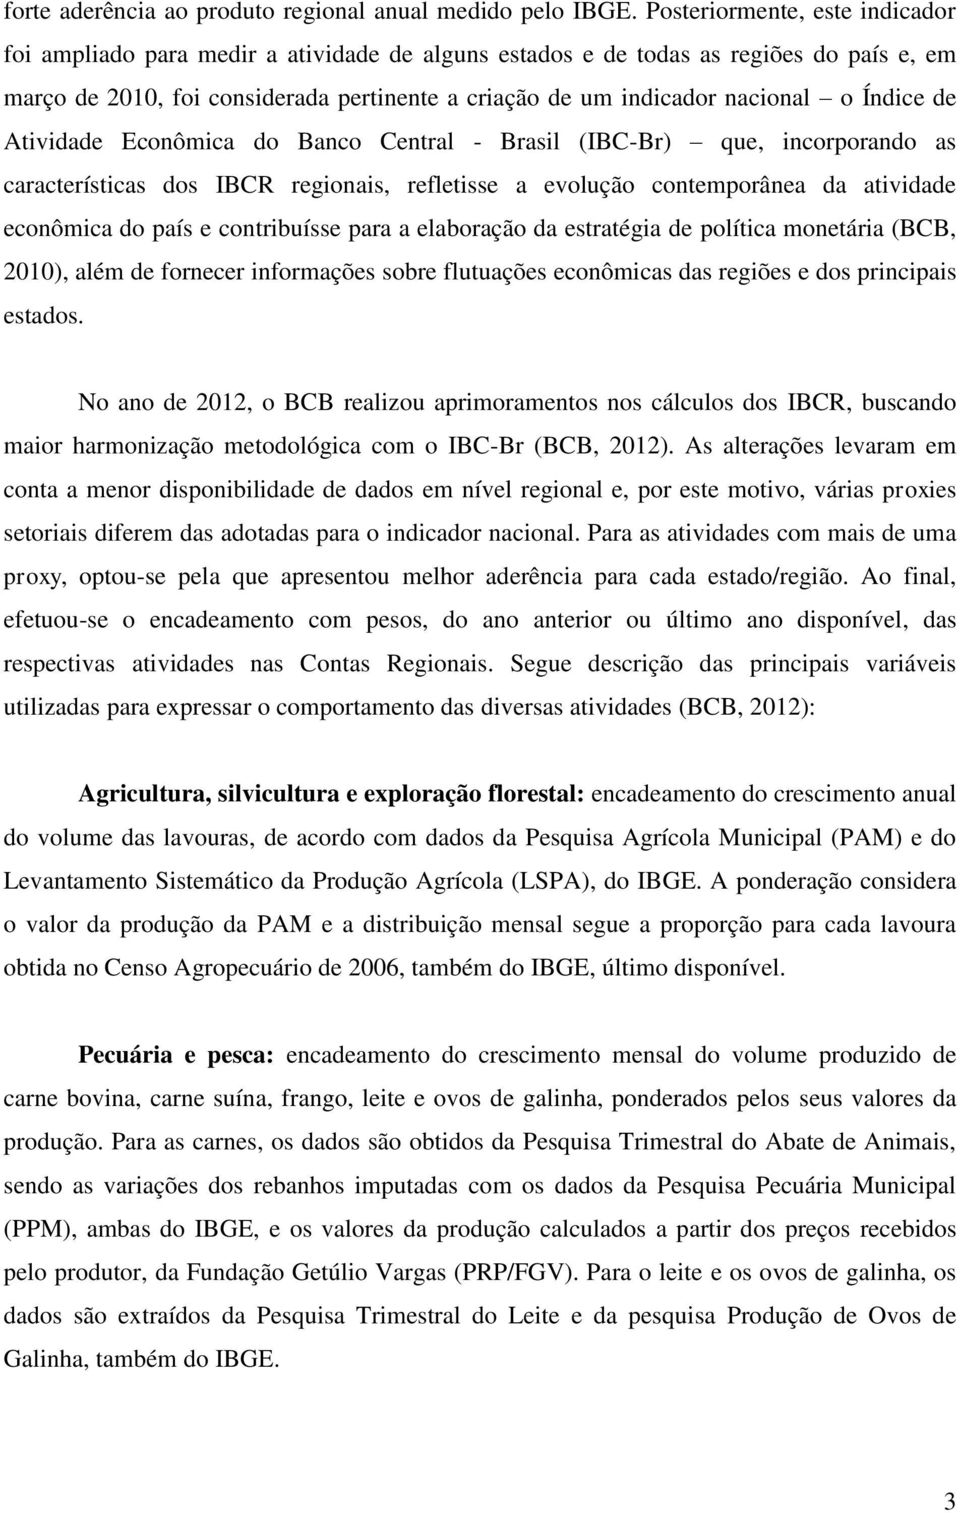 Índice de Atividade Econômica do Banco Central - Brasil (IBC-Br) que, incorporando as características dos IBCR regionais, refletisse a evolução contemporânea da atividade econômica do país e